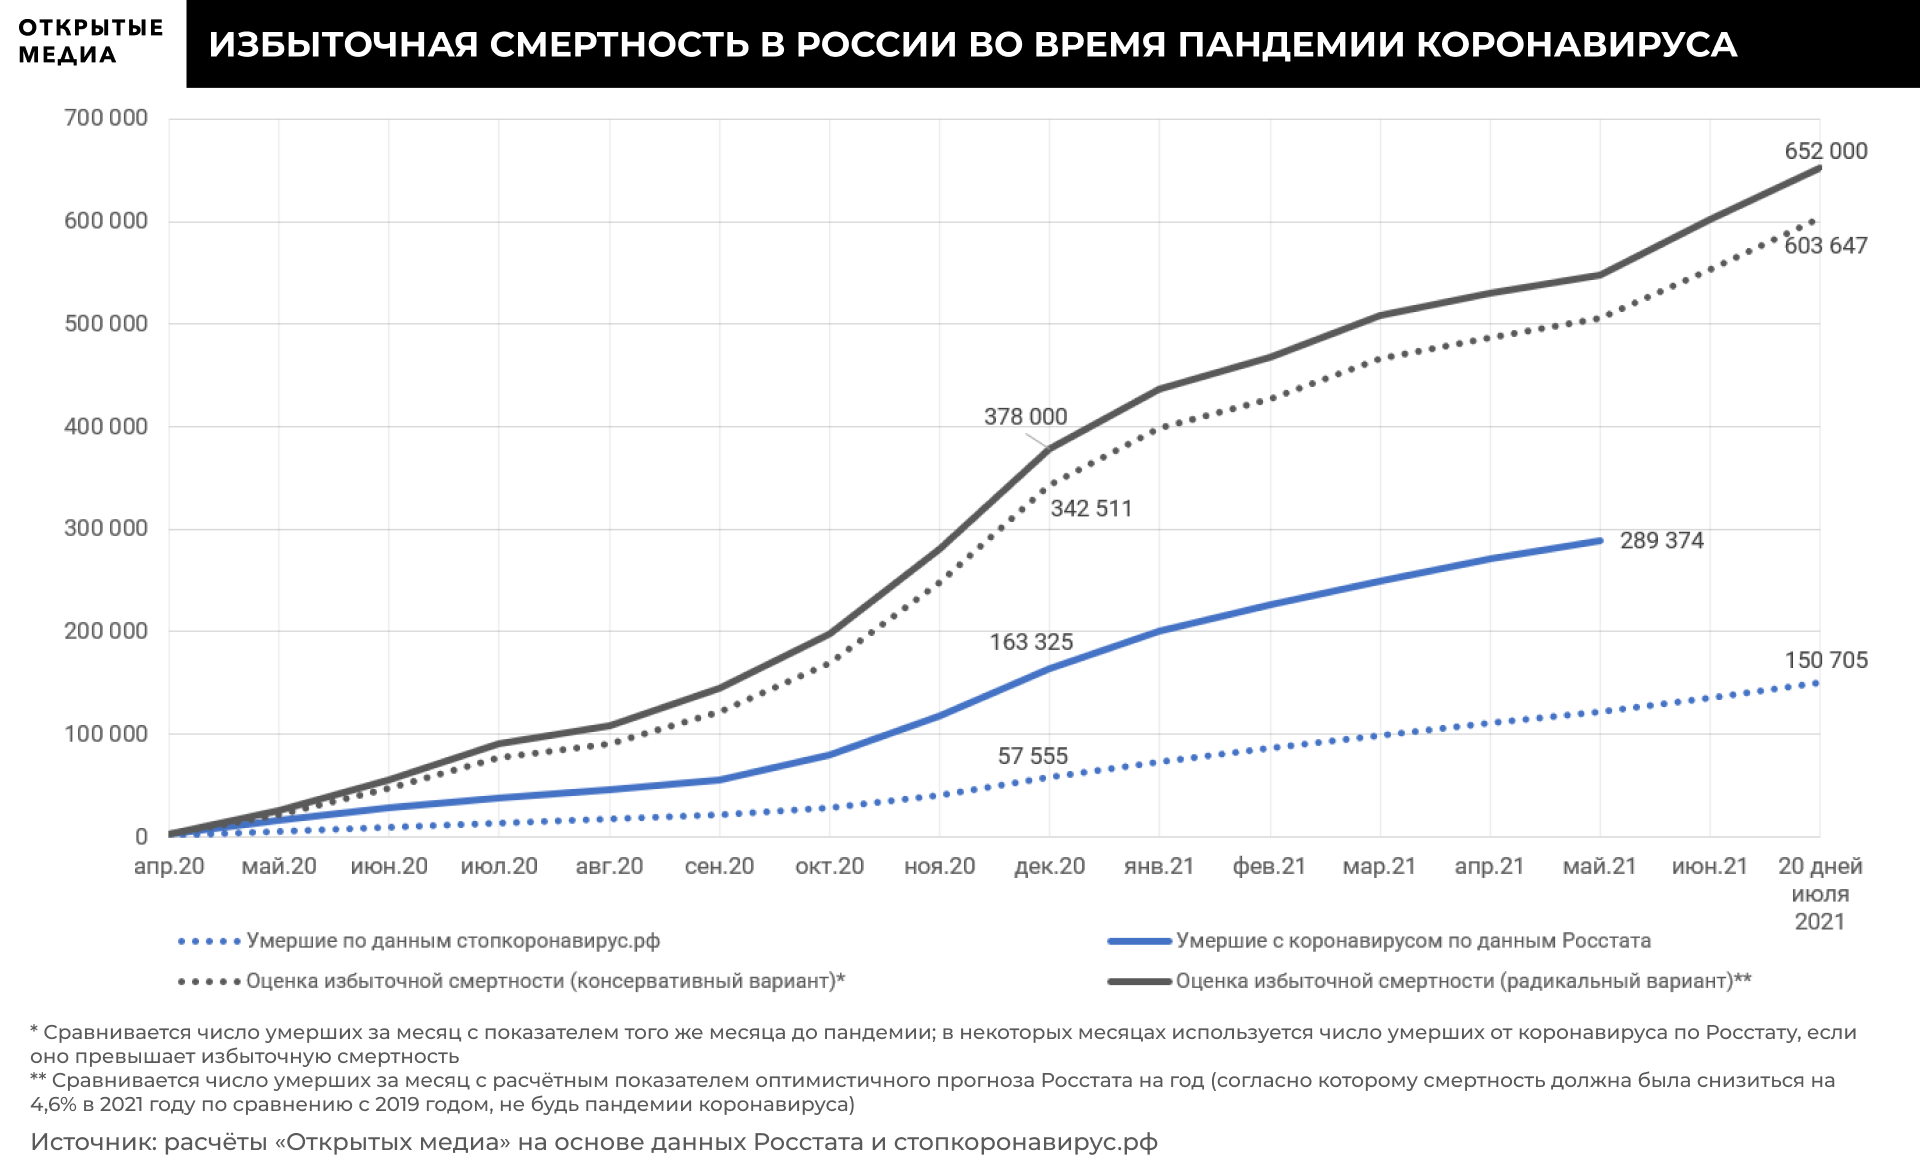 Причины смертности в России 2021. Избыточная смертность в России. Смертность в России 2021. График избыточной смертности в России.